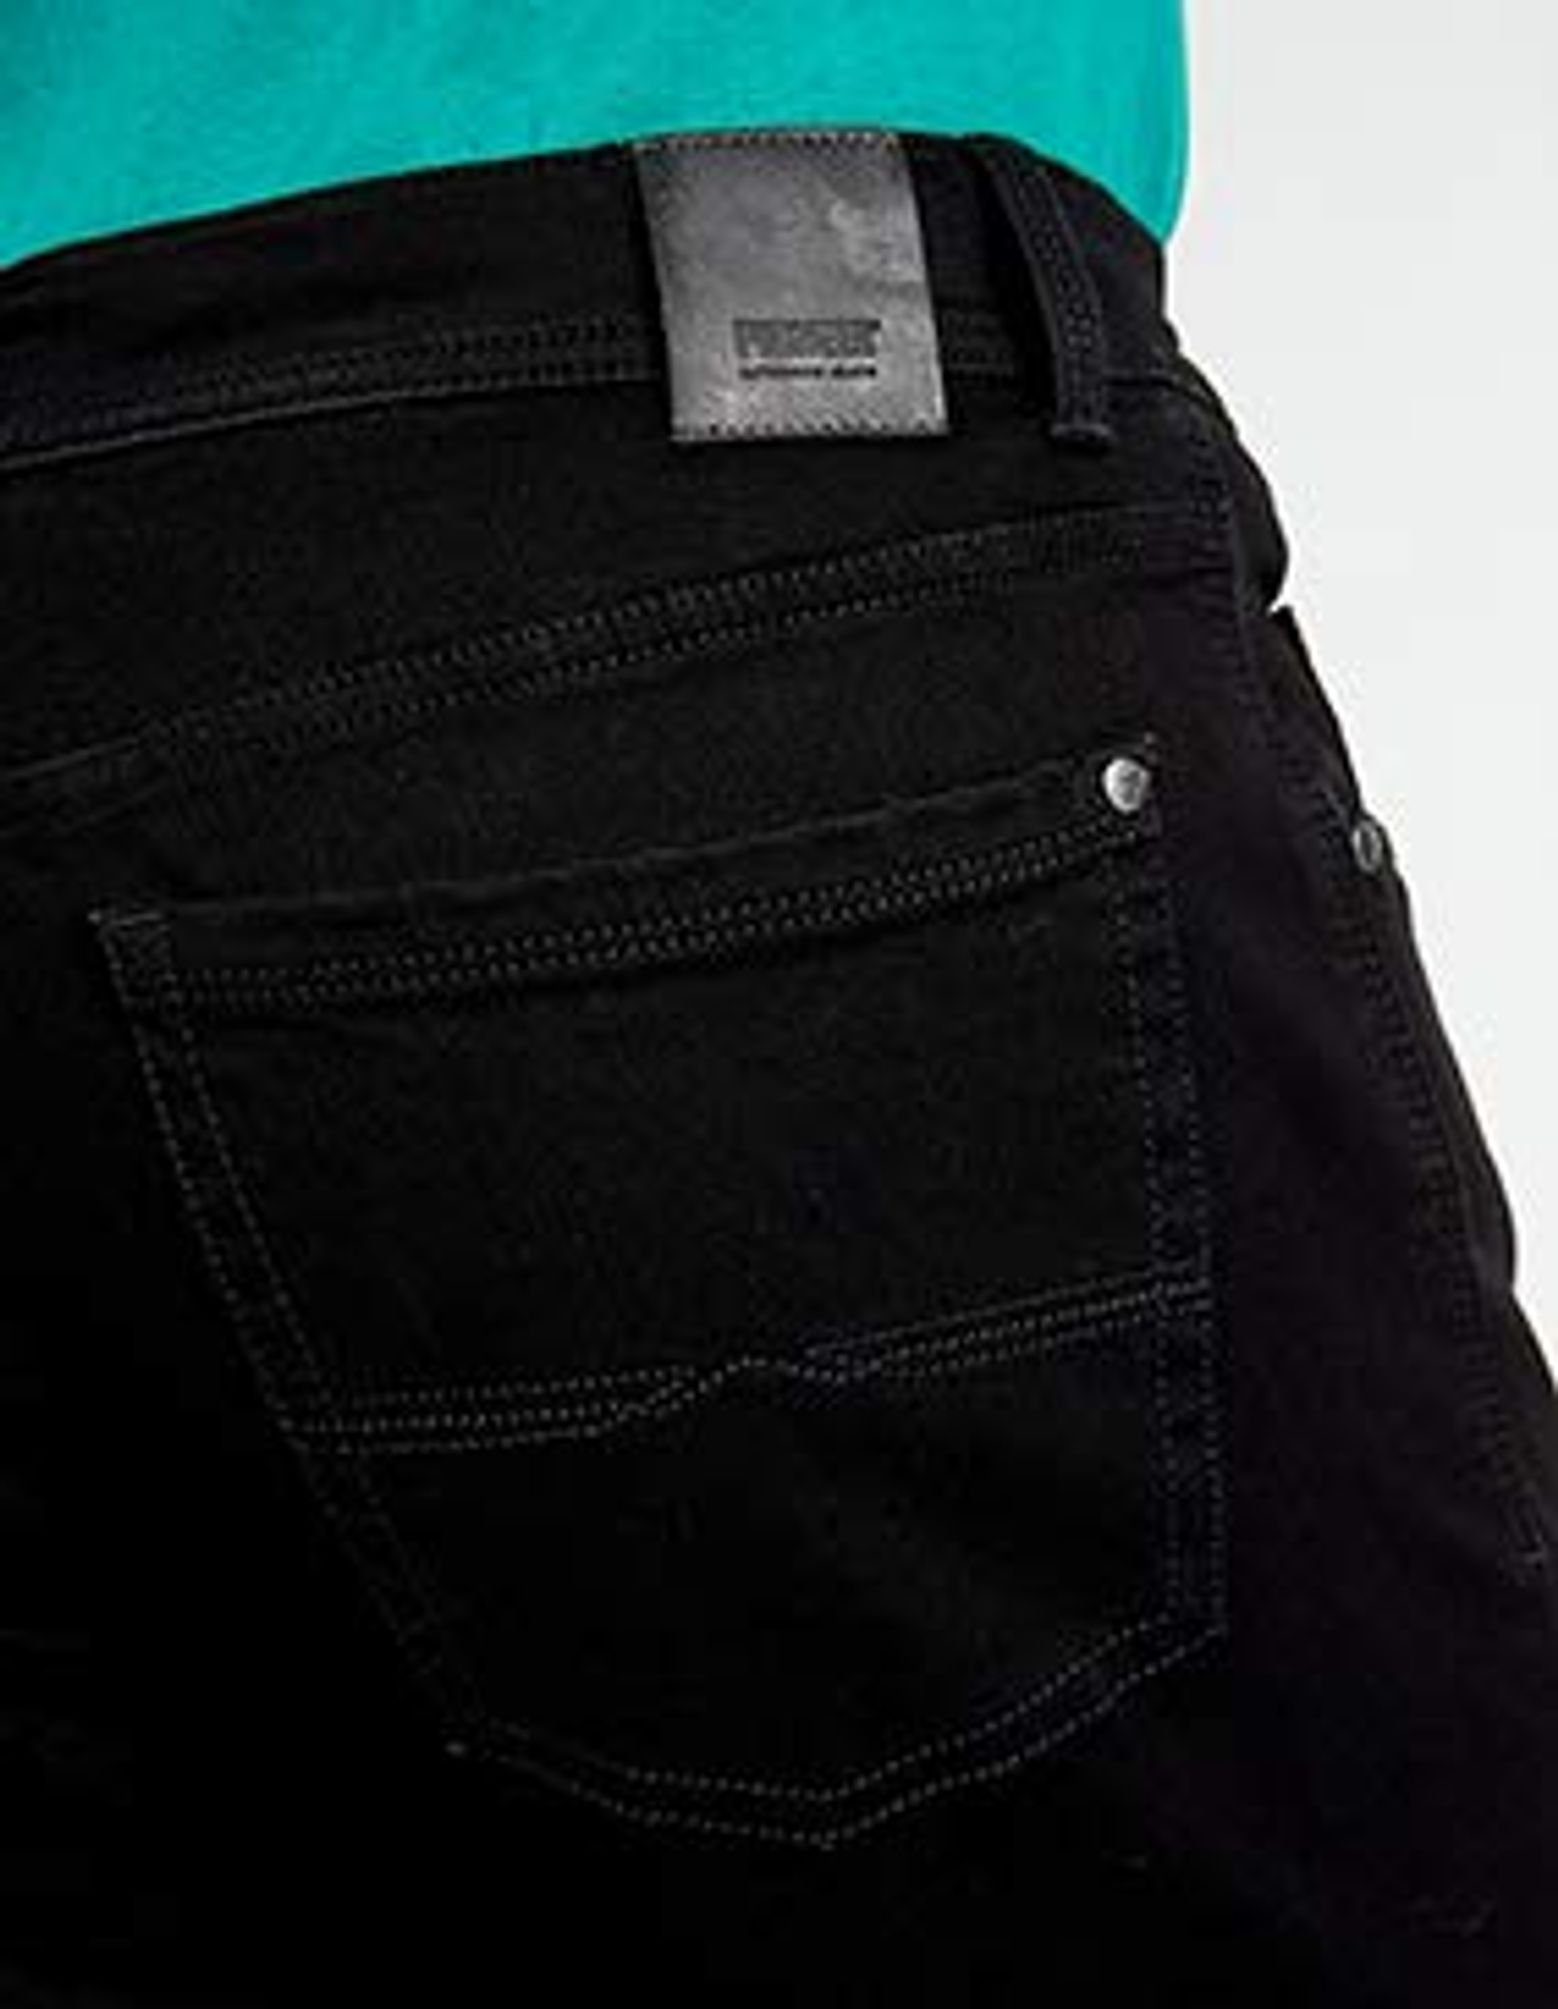 Jeans Pioneer 9487 5-Pocket-Jeans Authentic hohe Flexibilität 11 1680